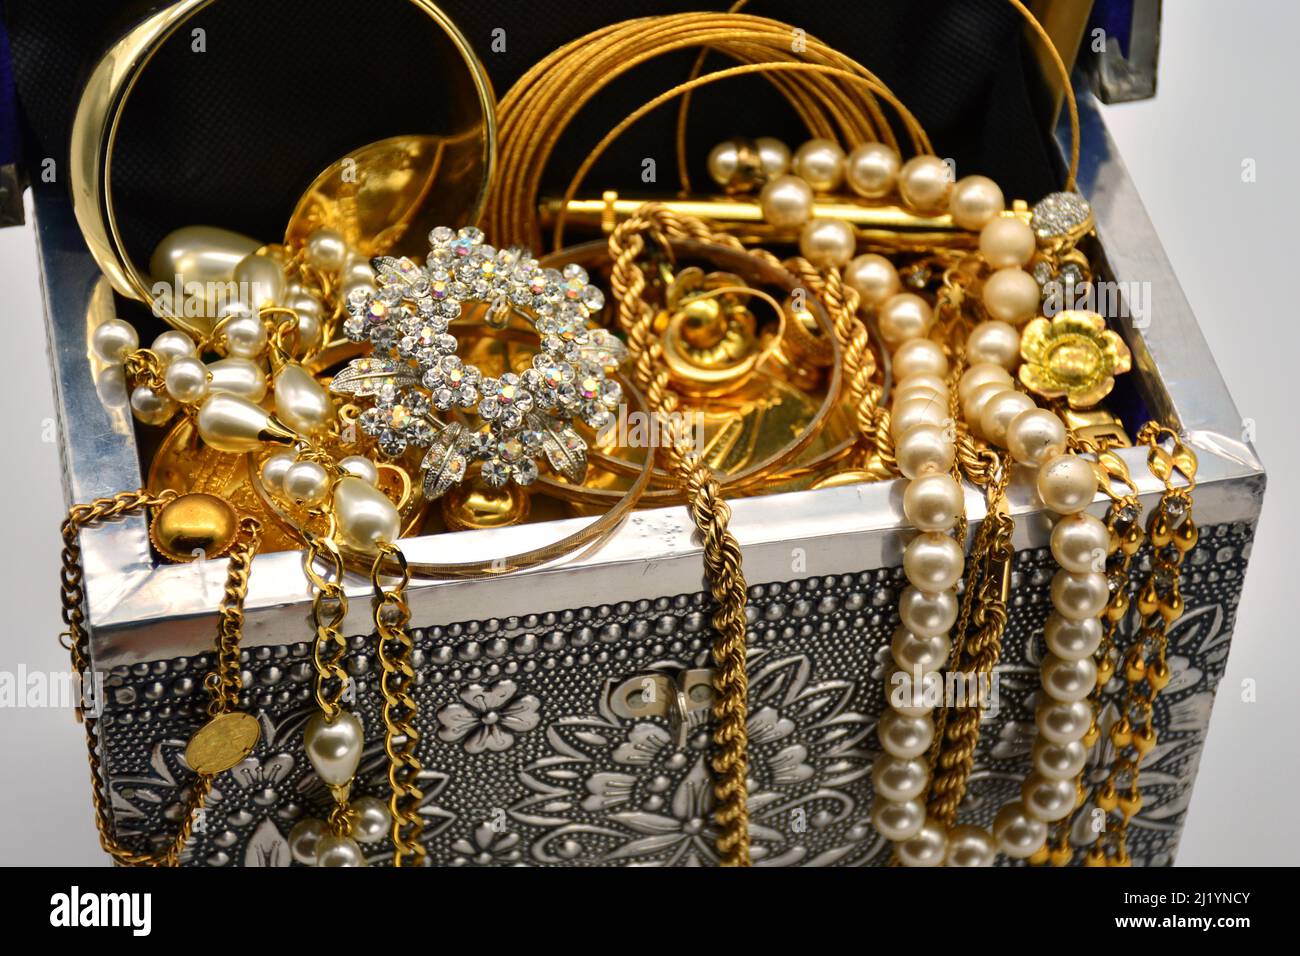 Un tesoro, cofre leno de joyas, perlas, y oro, sobre fondo blanco Foto Stock